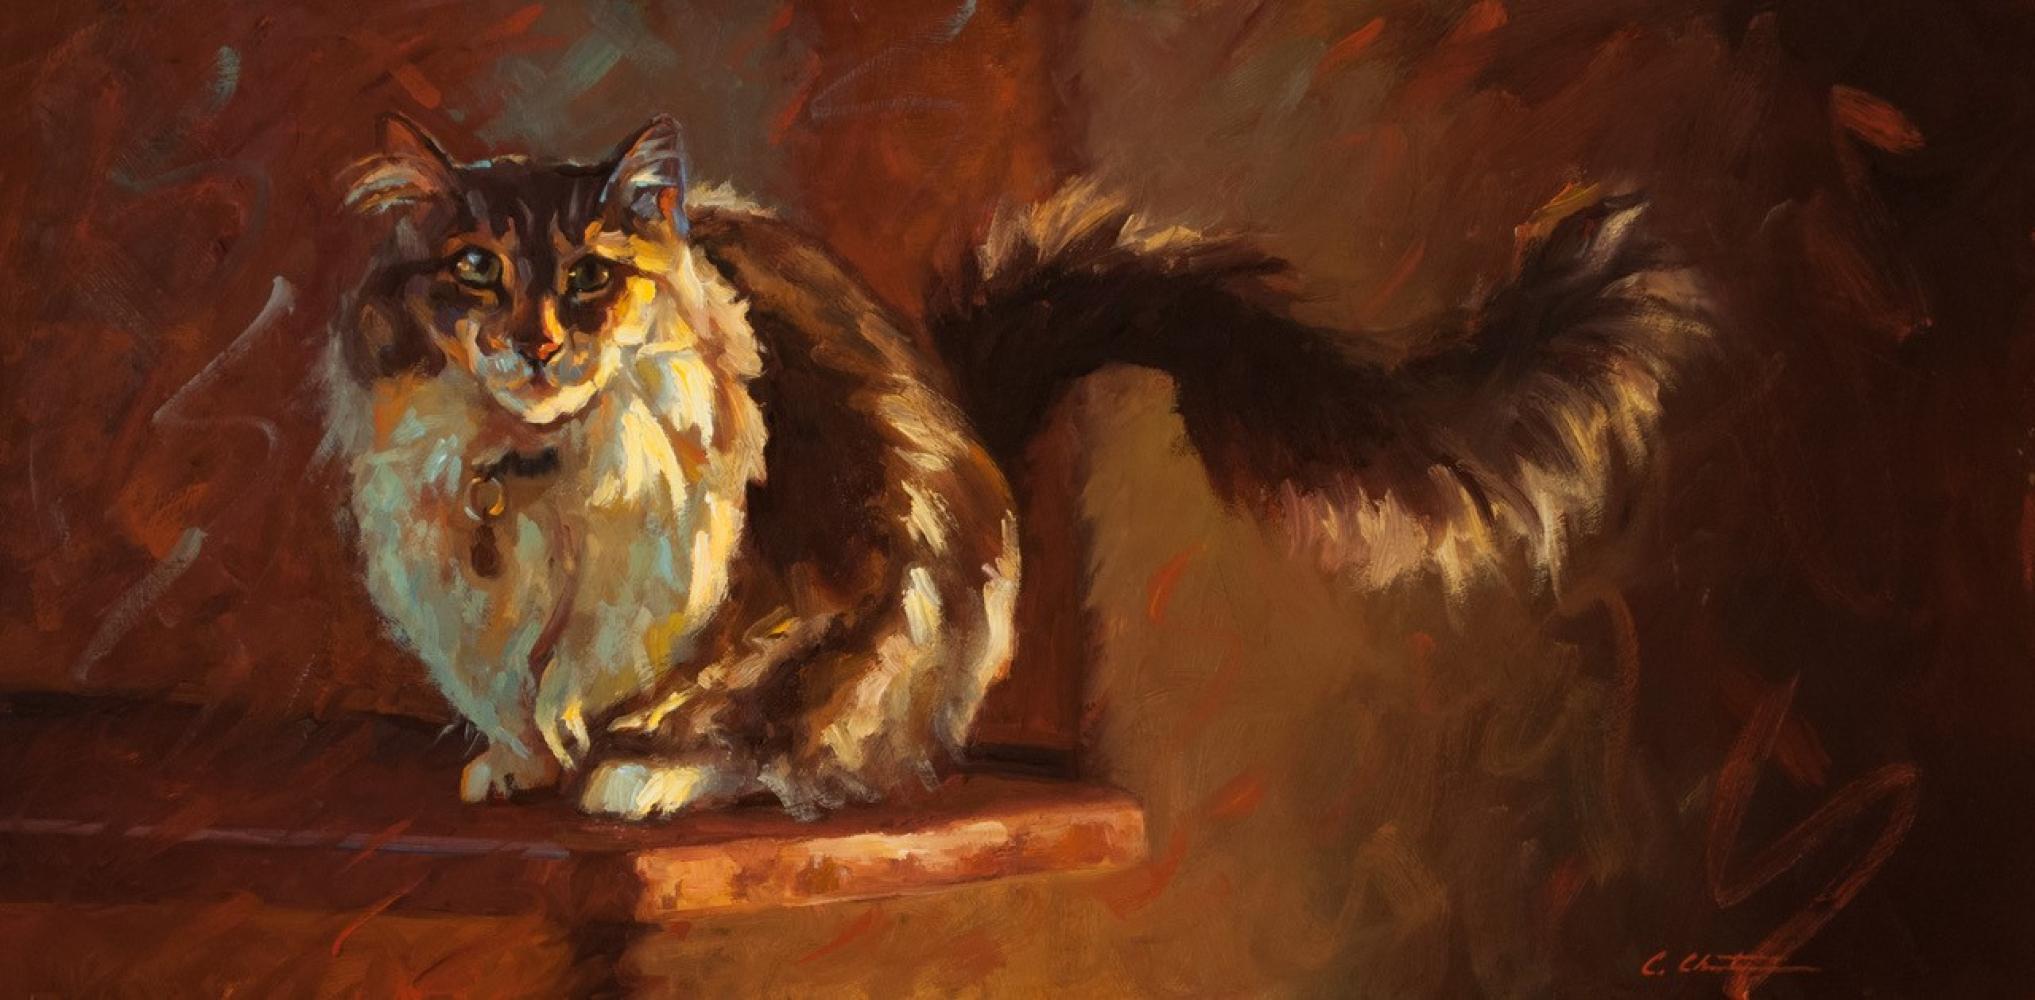 Katzen auf der Ledge, Impressionismus, l, Feline, Texaser Knstler, Katzen, Interieur